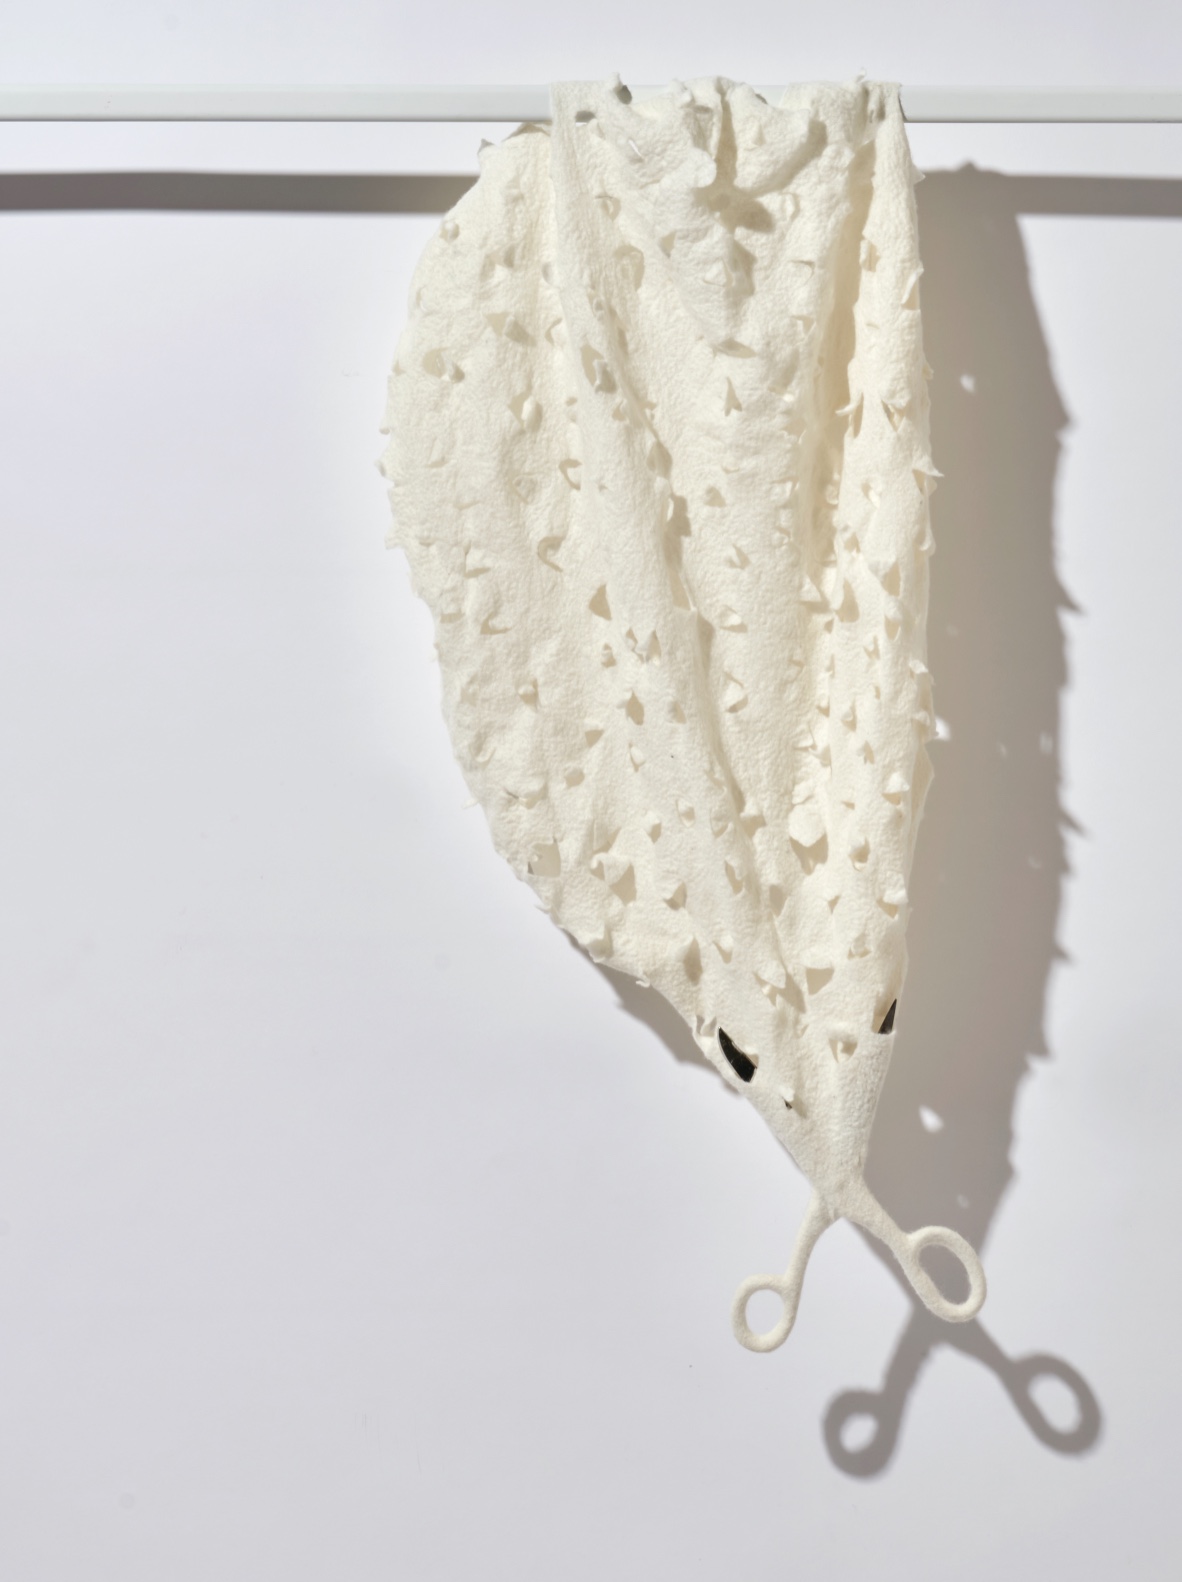 White cloth fiber art by Lisa Klakulak